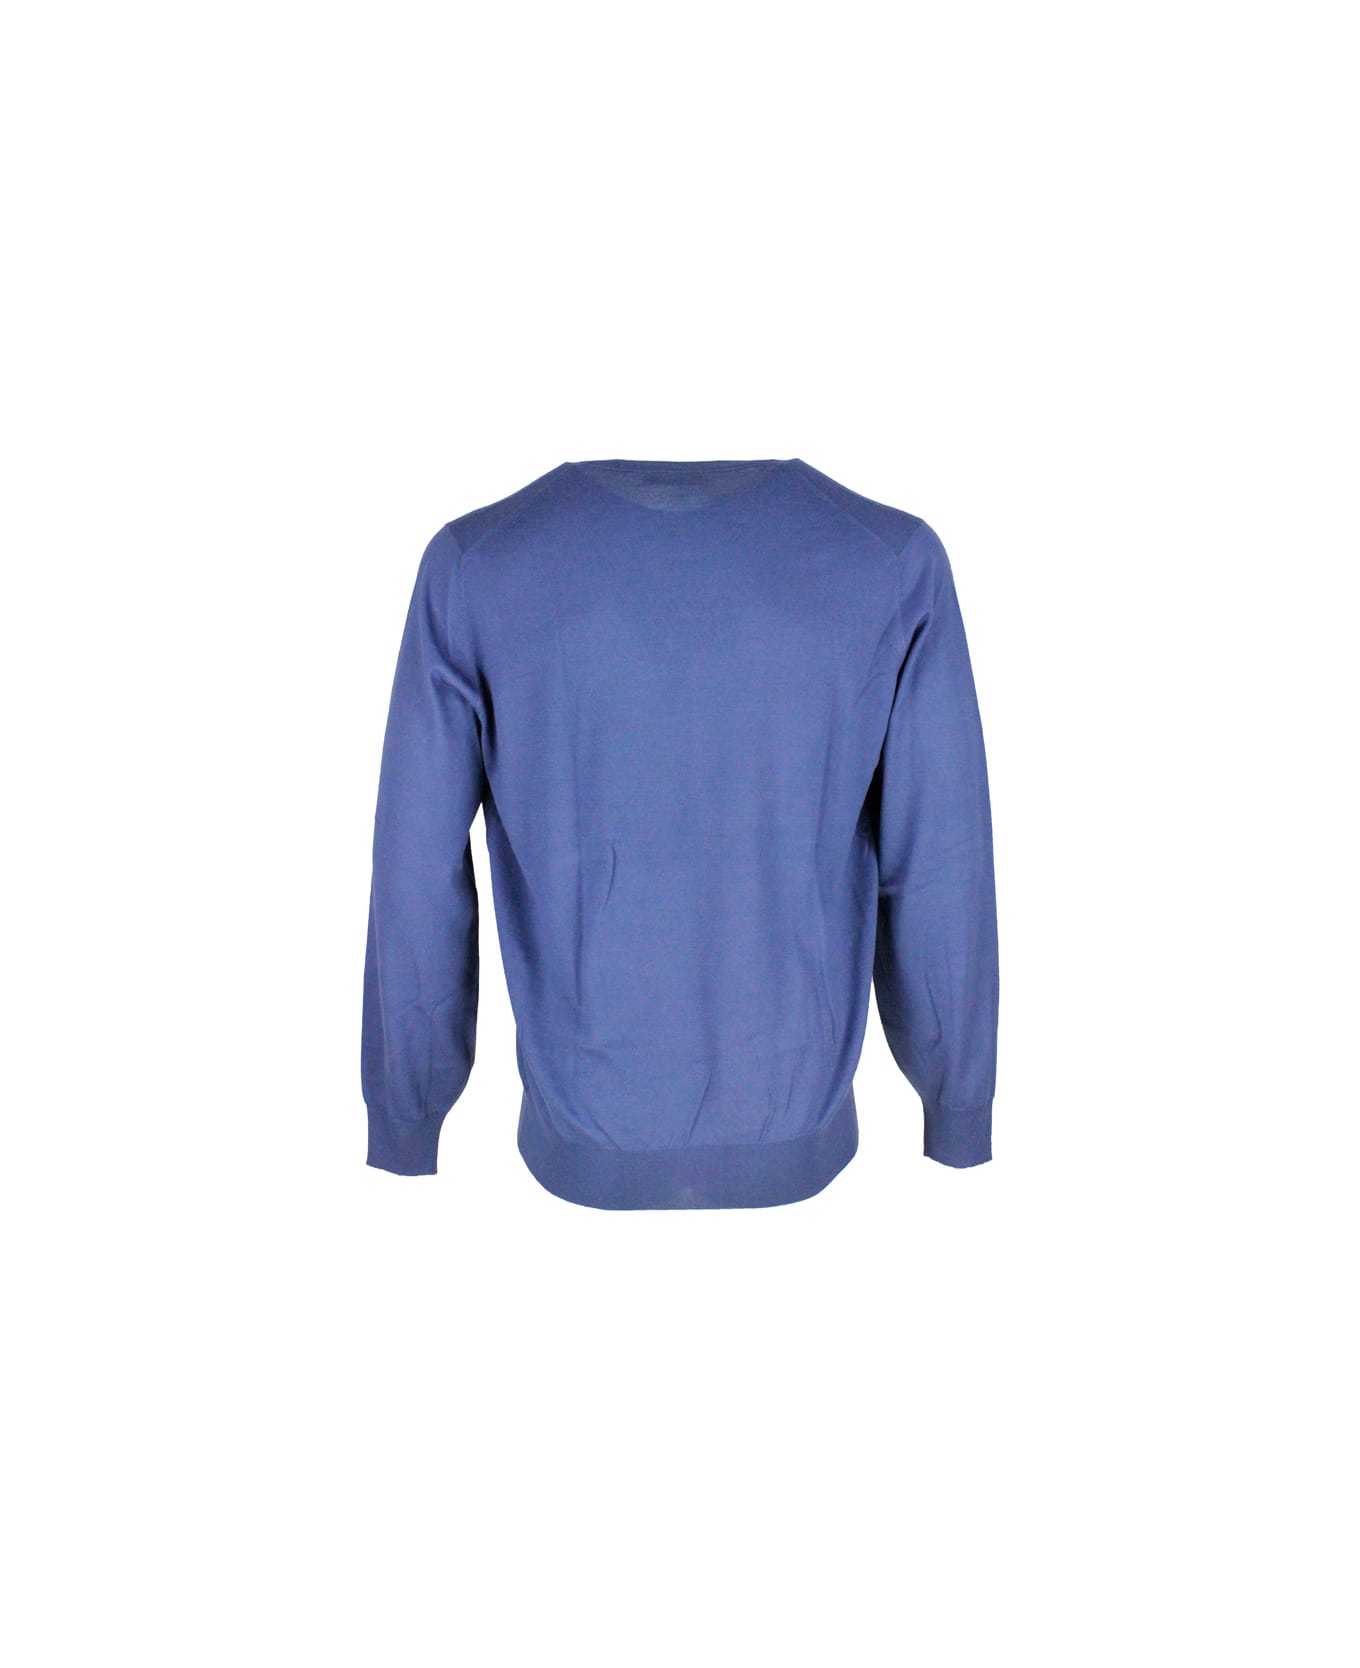 Brunello Cucinelli Long-sleeved V-neck Sweater - Blu ニットウェア